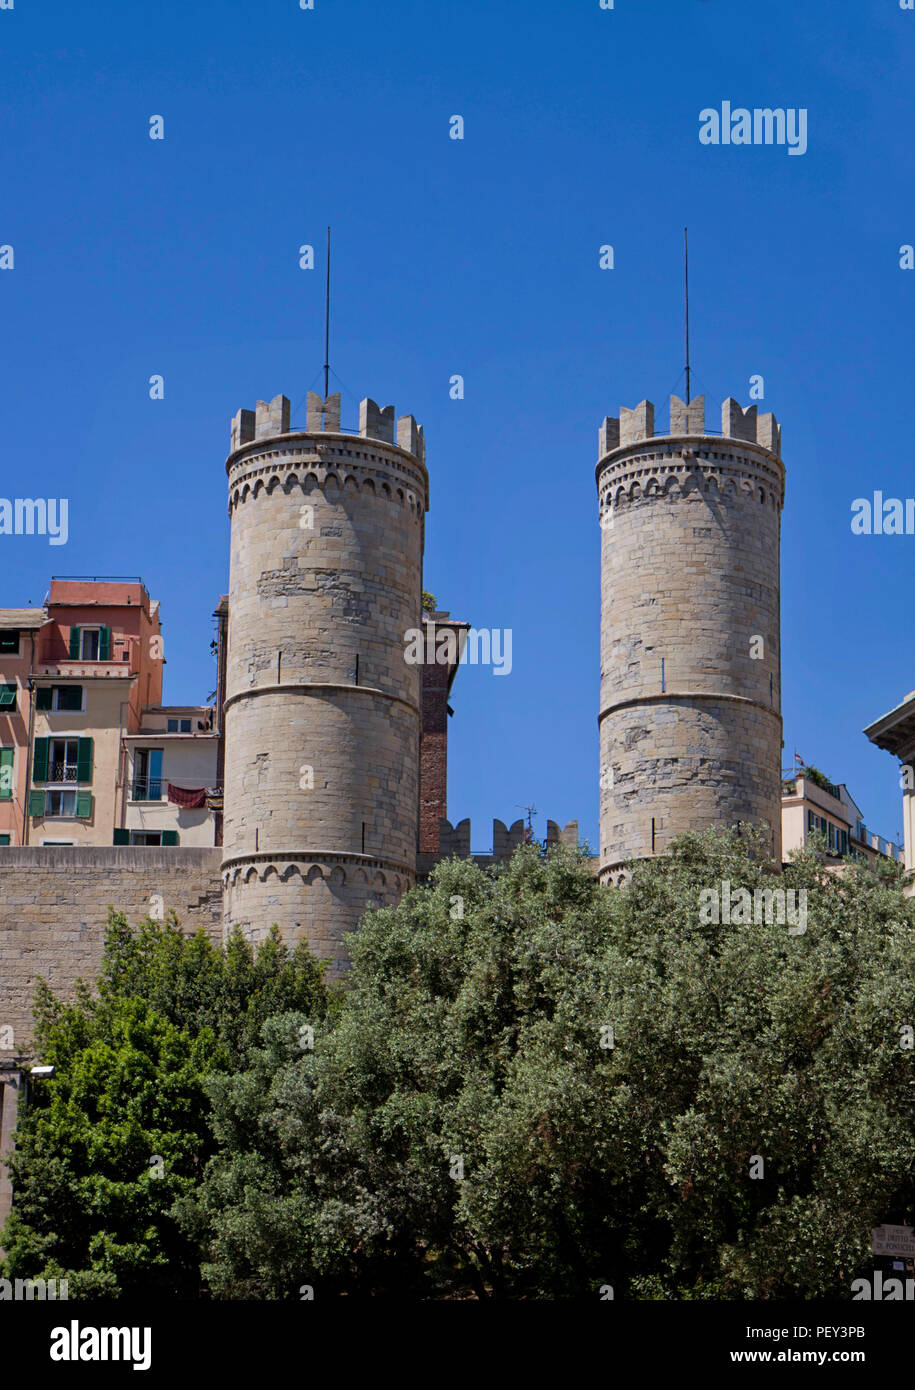 Génova, Italia - Porta Soprana torres medievales, la majestuosa entrada a la ciudad desde el Este, construido en el siglo XII, con las murallas de defensa Foto de stock